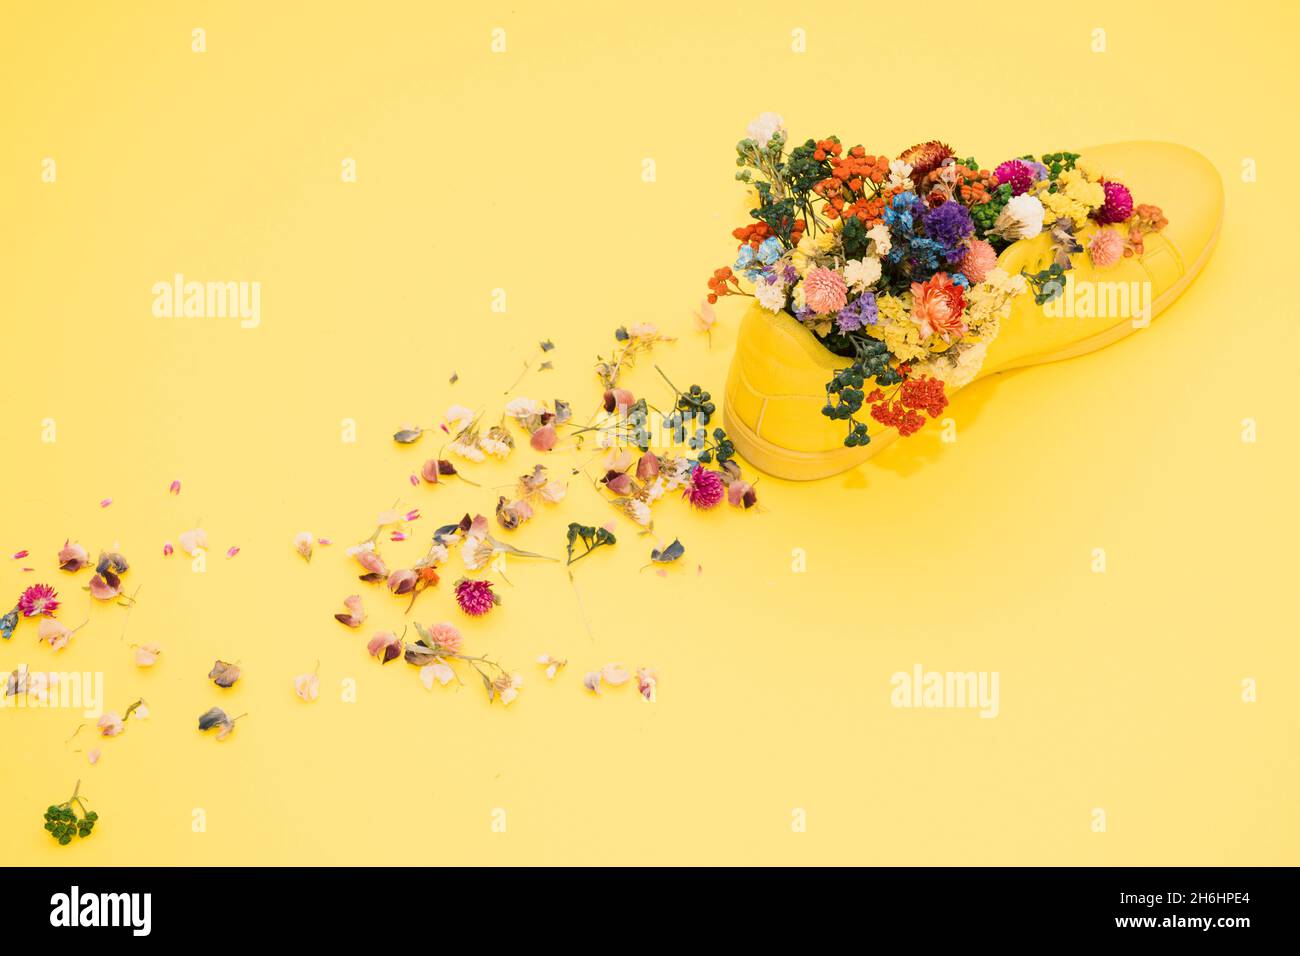 Primer plano de la bota amarilla creativa decorada con flores coloridas en la superficie amarilla Foto de stock